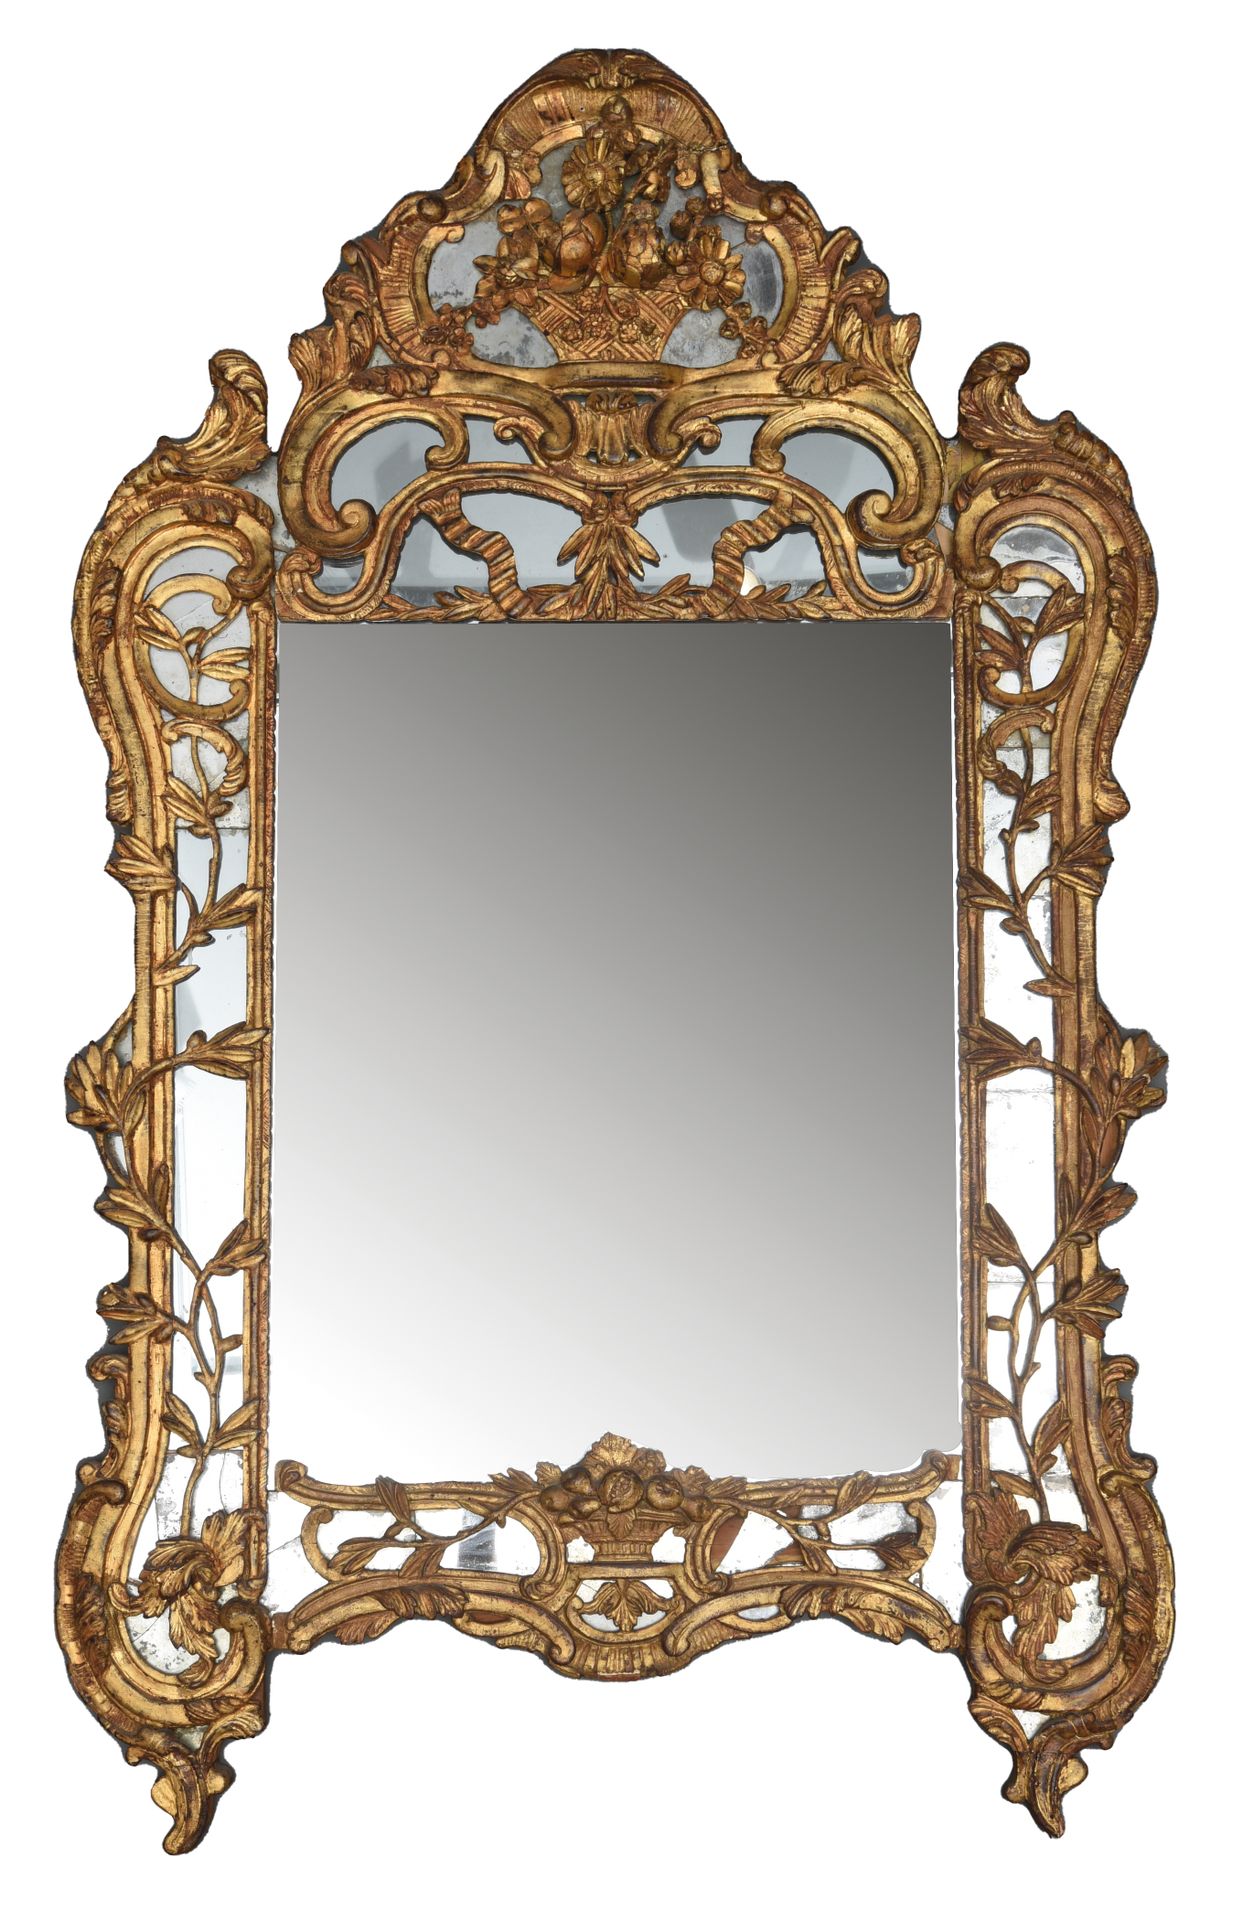 Null 镜子

装在一个雕刻和镀金的木框中，并有保留。

花坛上有一个花篮

18世纪时期

172 x 105 cm